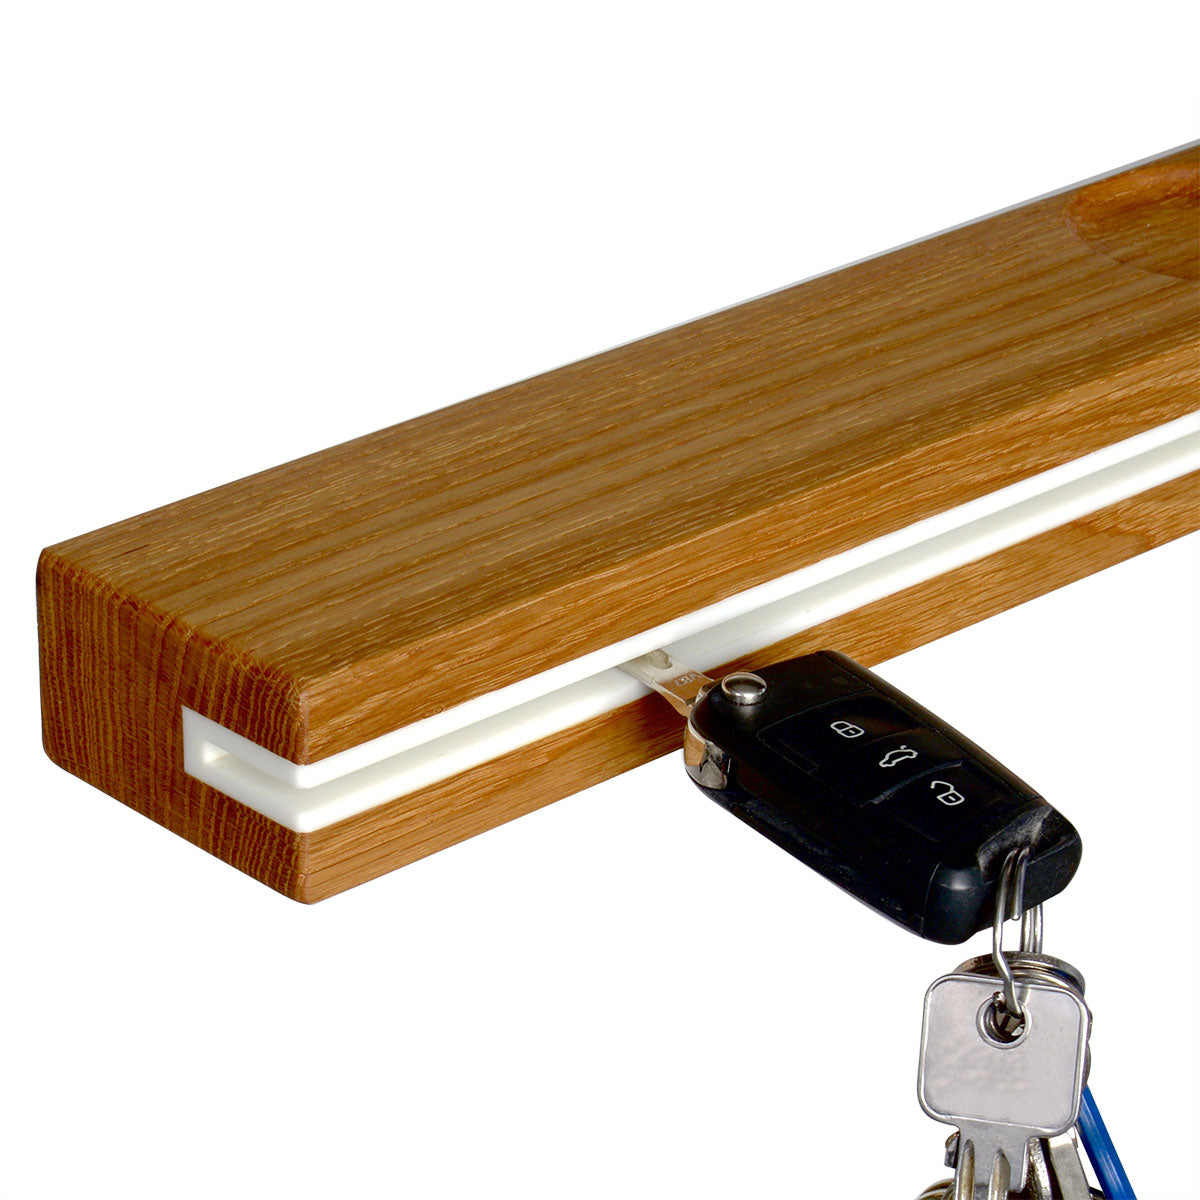 Key rack | Schlüsselbrett aus Eichenholz und Acrylstein - Handgefertigt in Deutschland